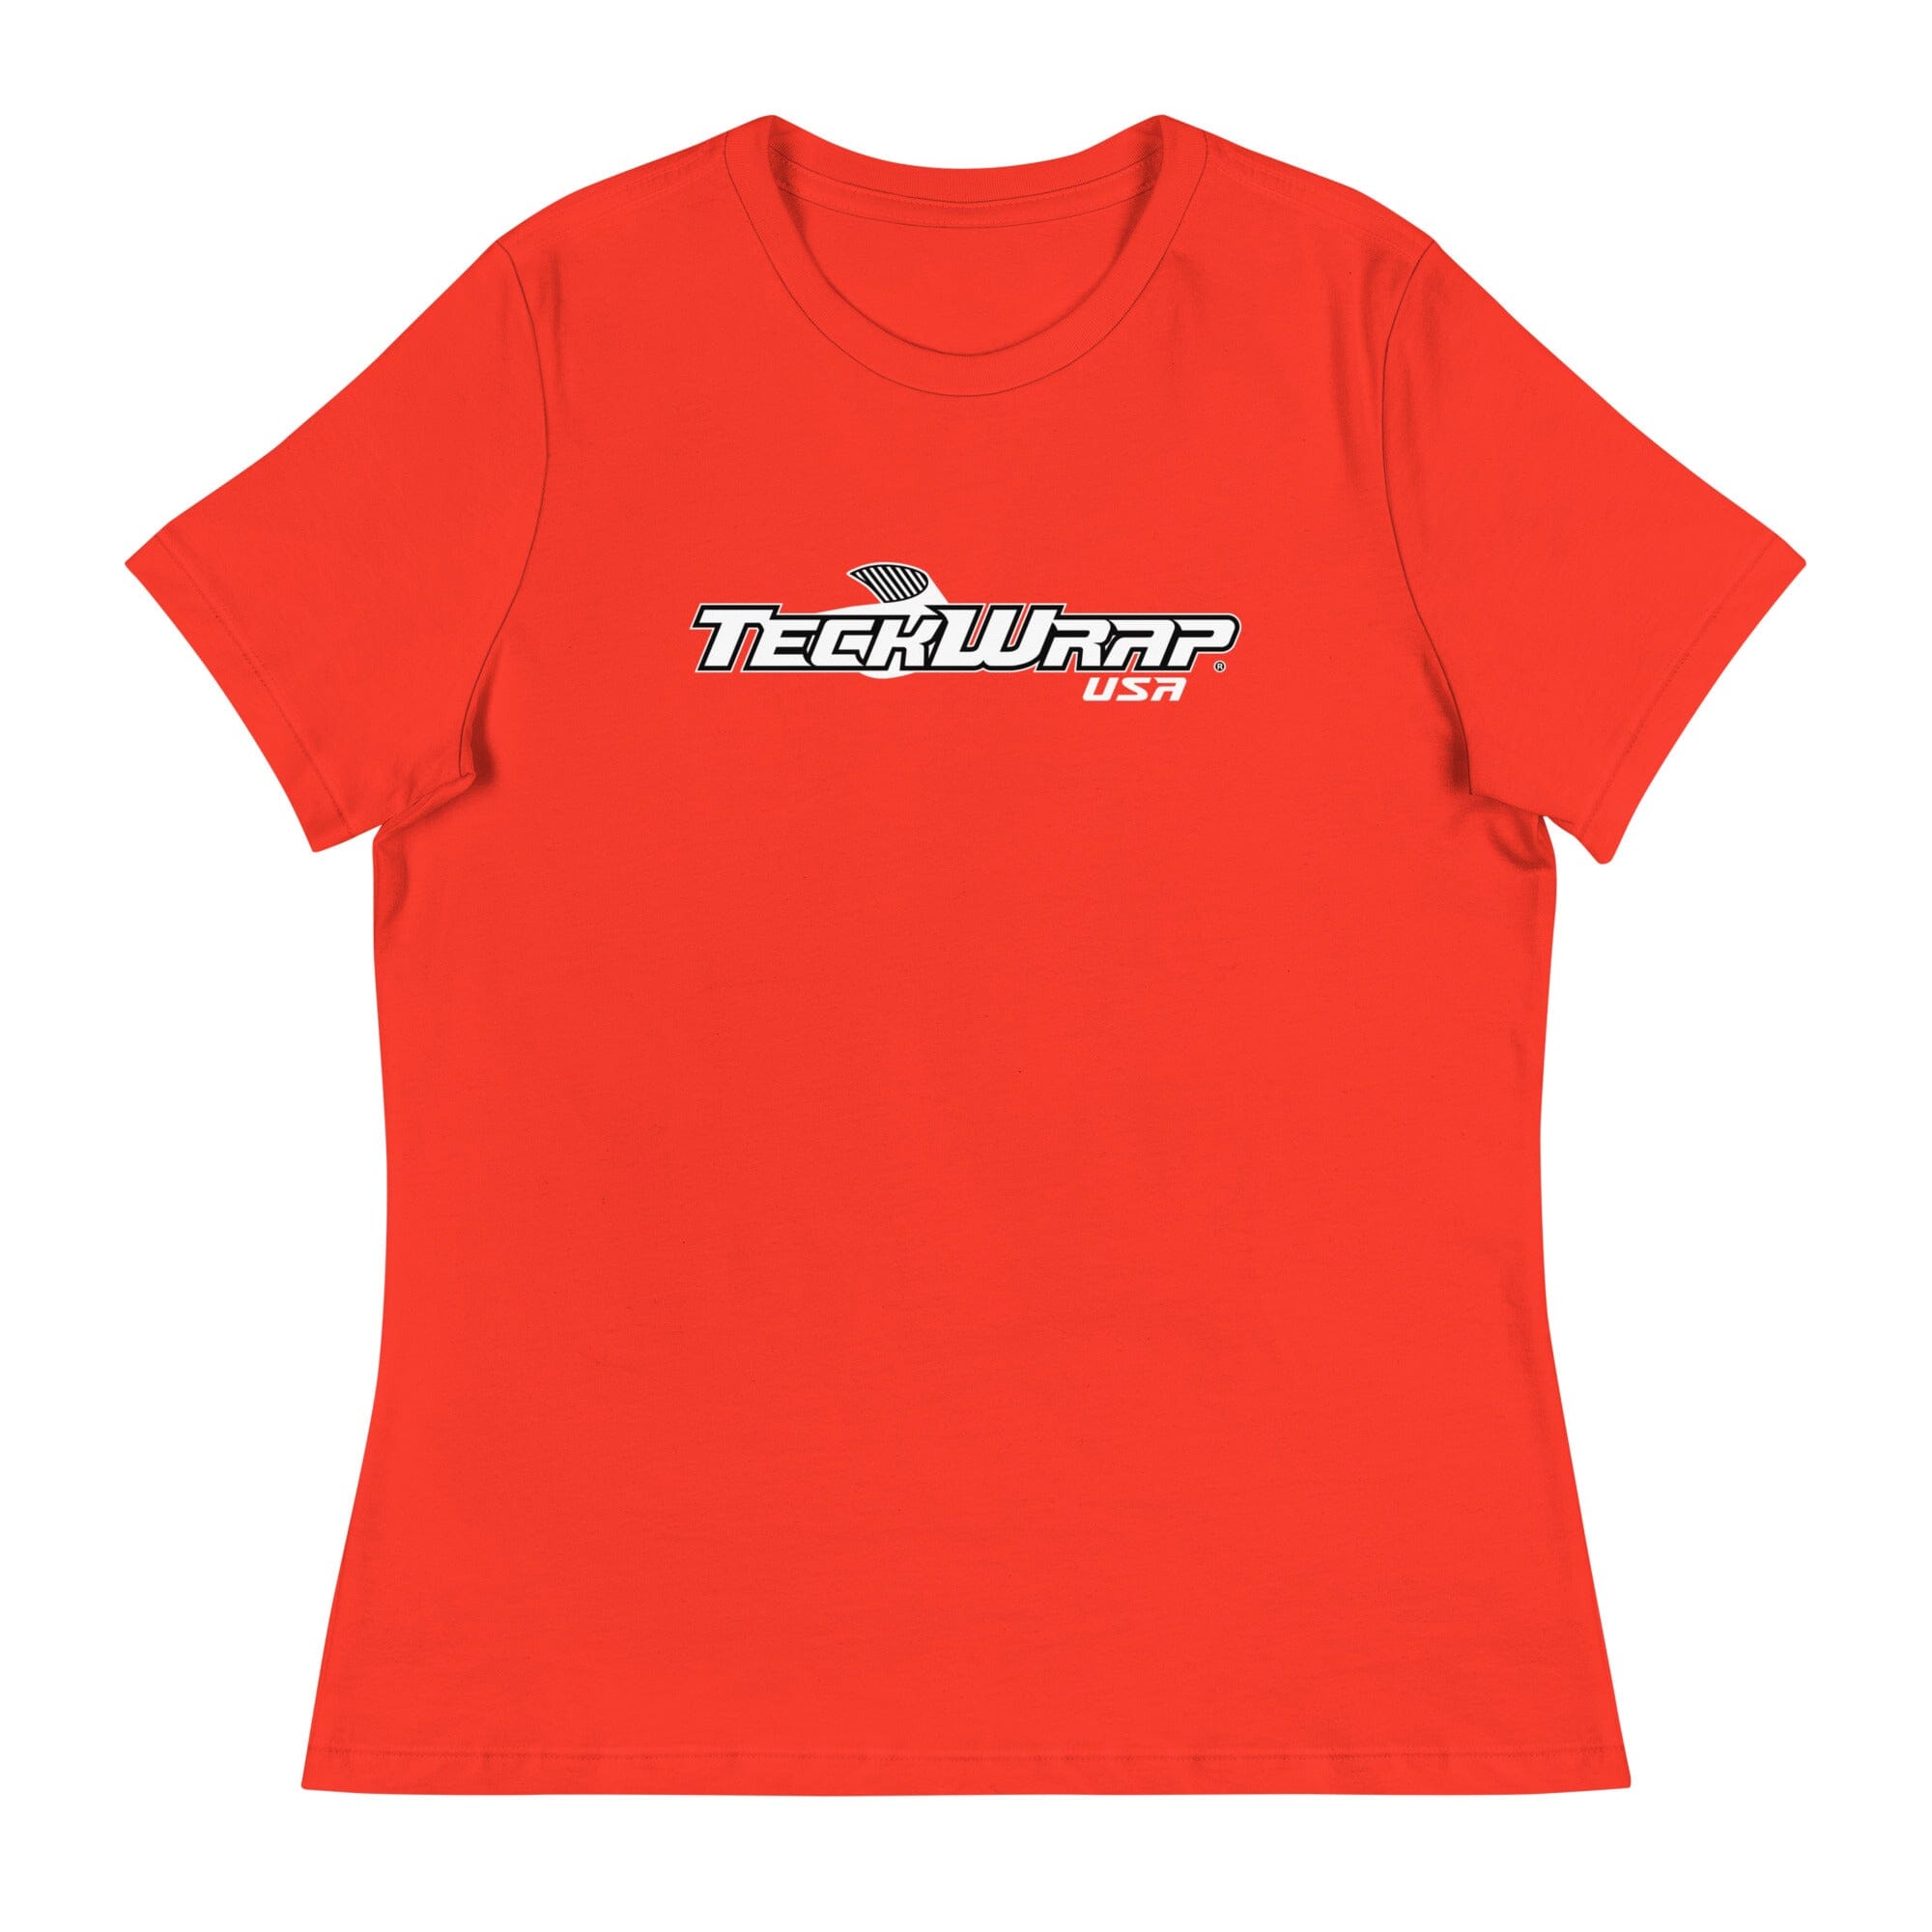 Women's TeckWrap Shirt Teckwrap USA Poppy S 